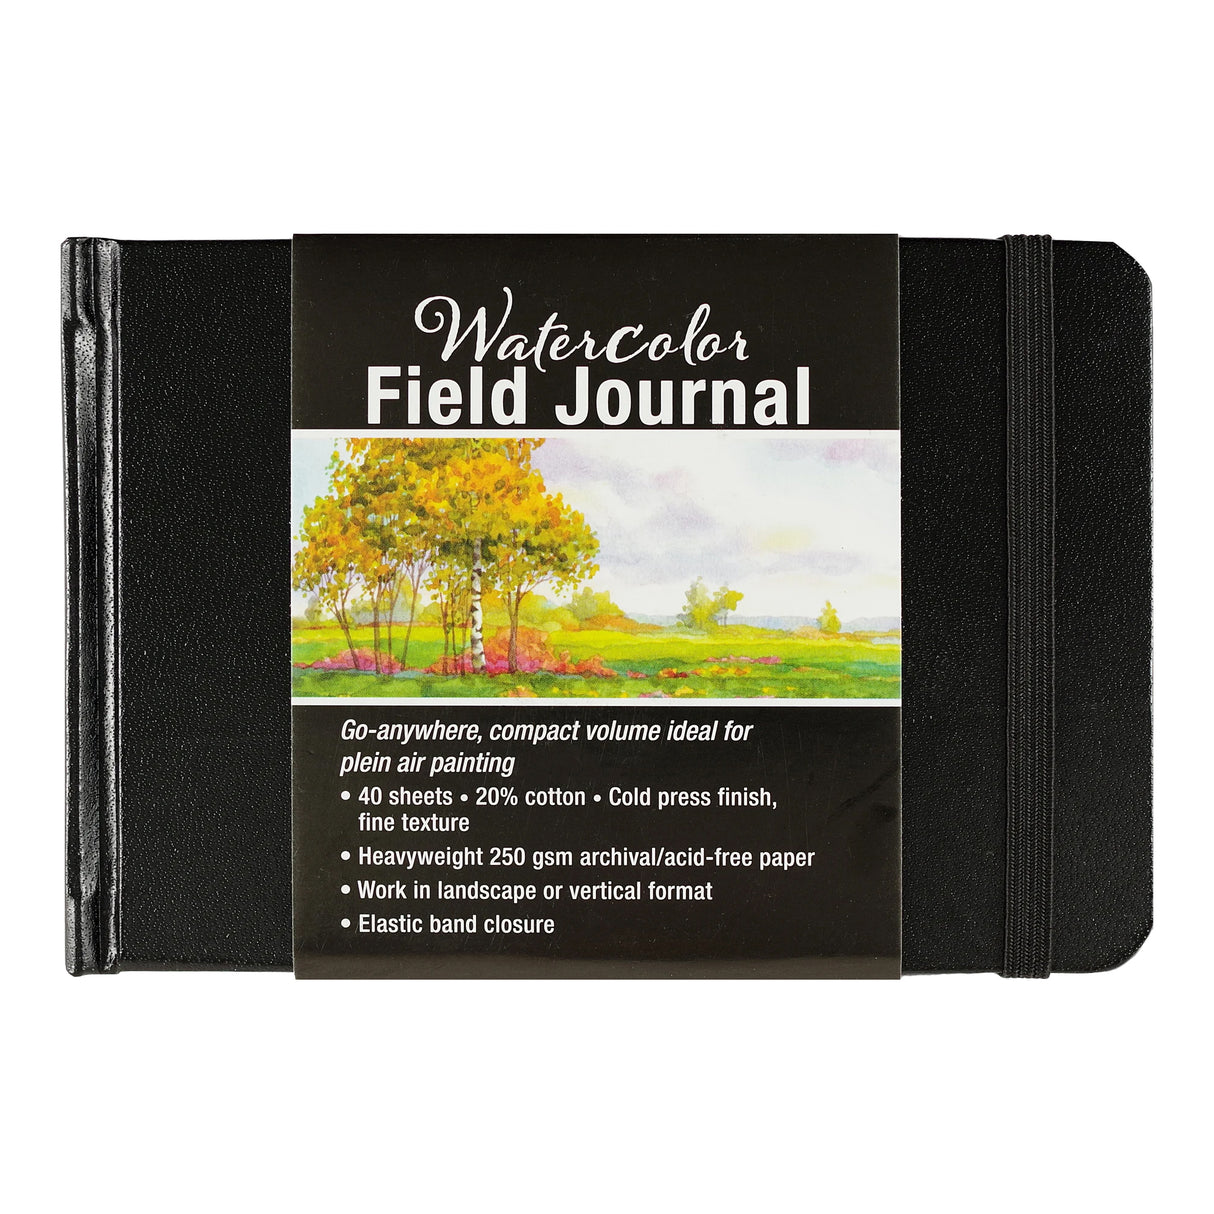 Watercolour Field Journal